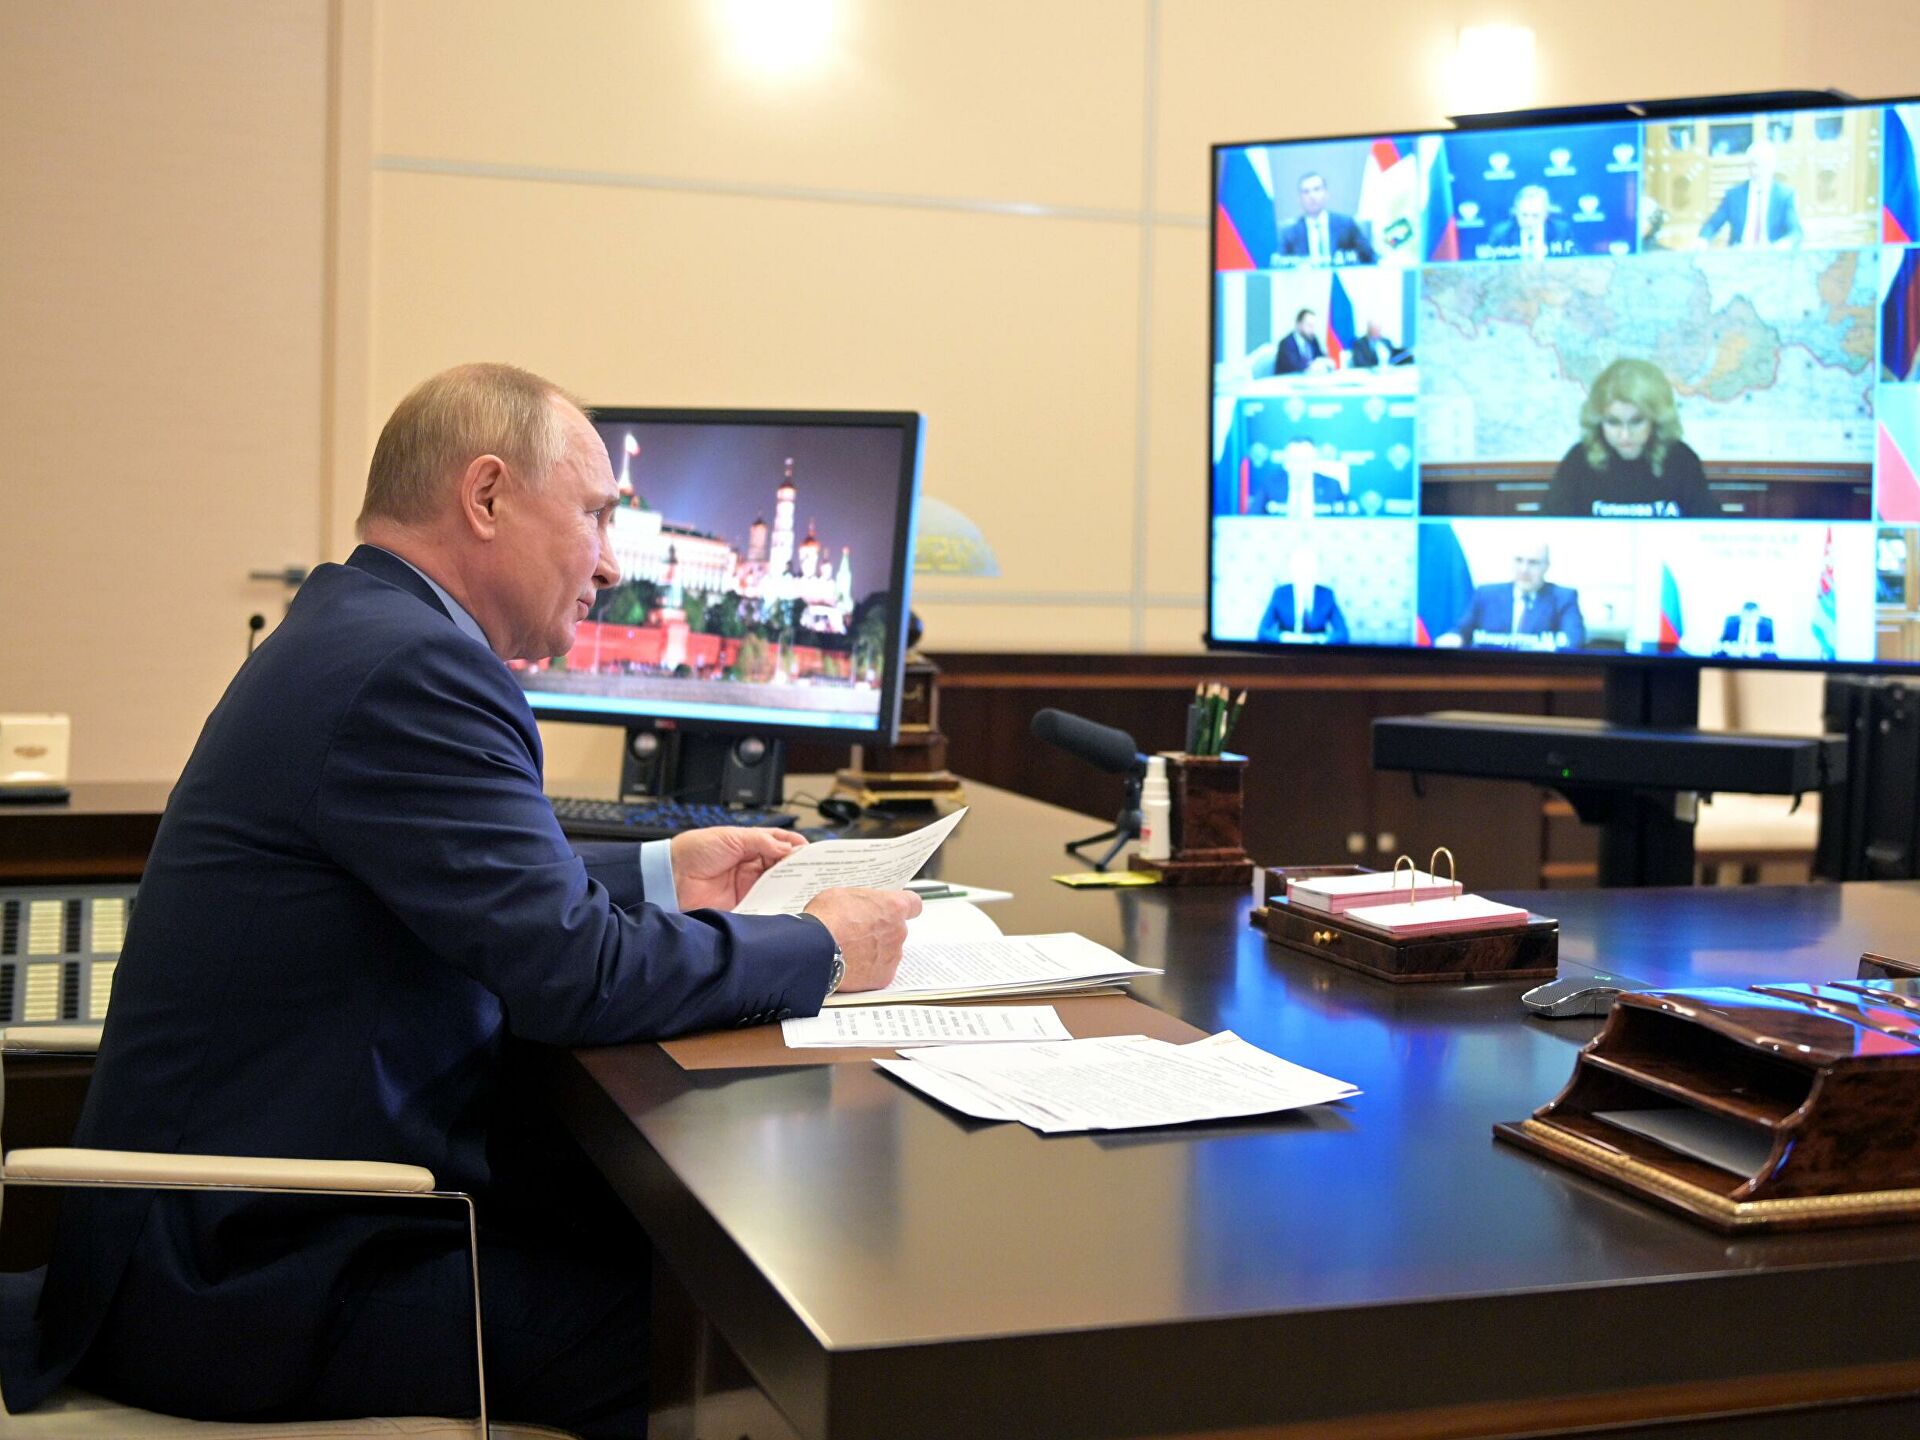 На совещании с членами Правительства России Владимир Путин поручил реализовать меры по противодействию COVID-19 и по поддержке экономики, малого и среднего бизнеса